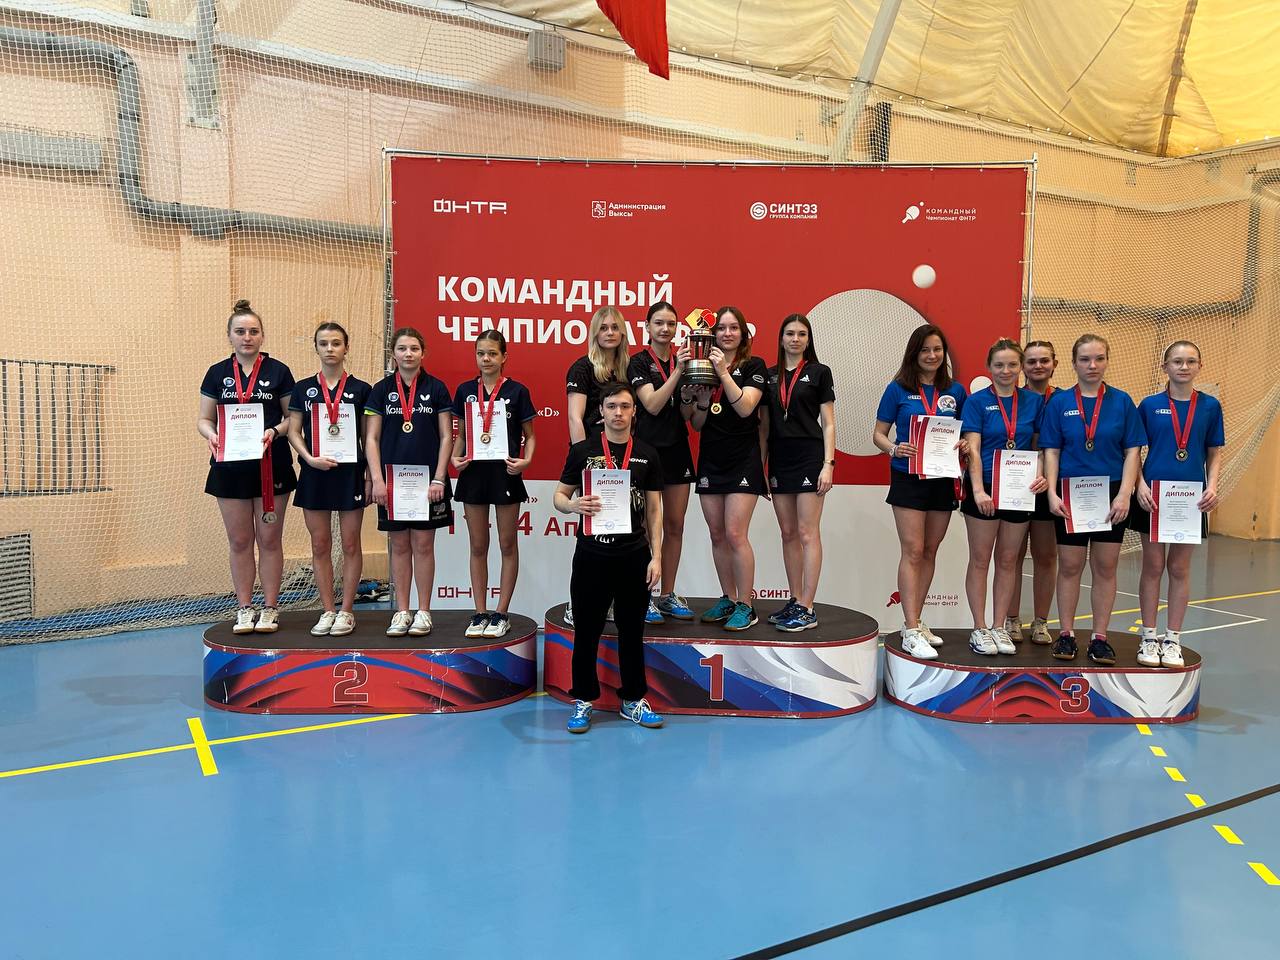 Команда Кондор-Эко завоевывает 2-е место в высшей лиге группы D чемпионата России по настольному теннису среди женских команд в сезоне 2023-24